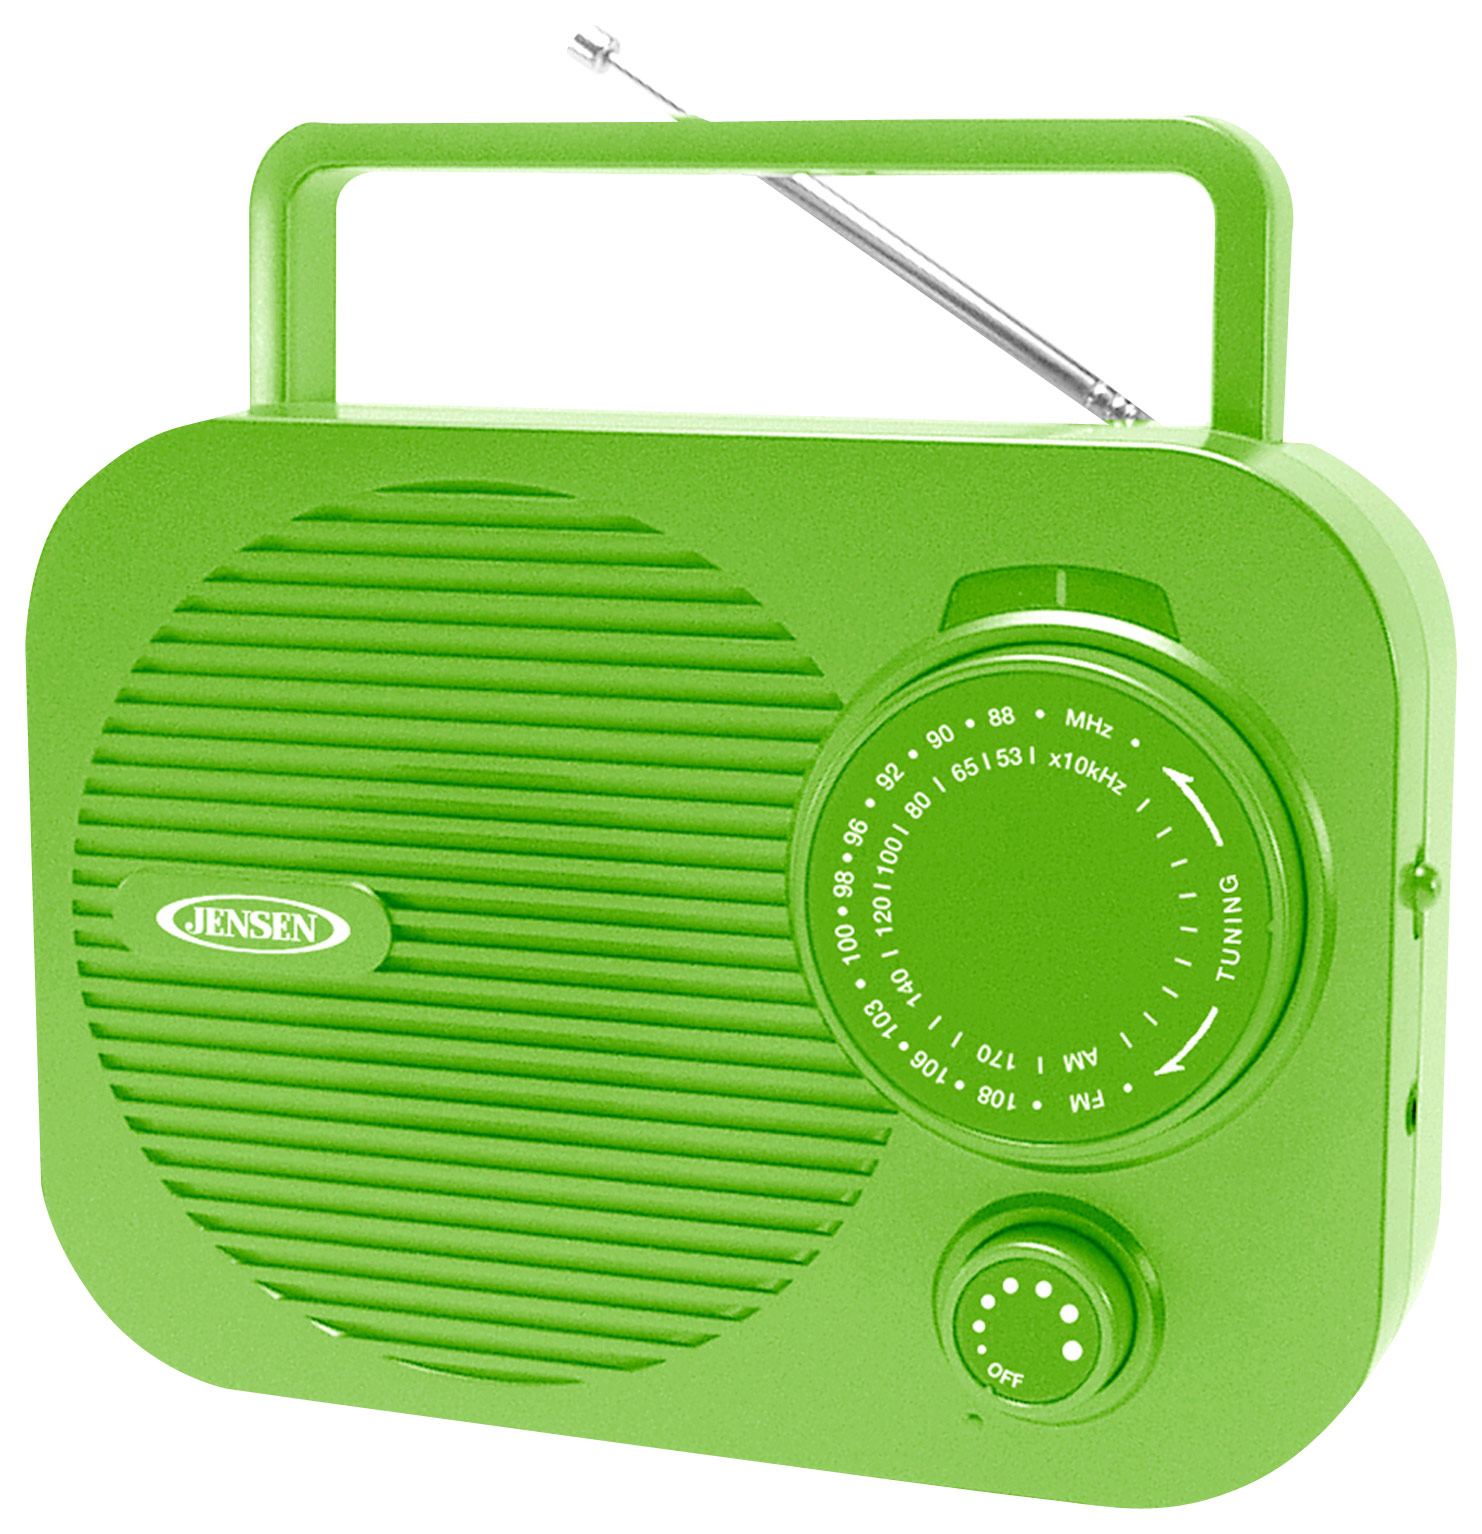 Jensen AM/FM Radio Green MR-550-G - Best Buy